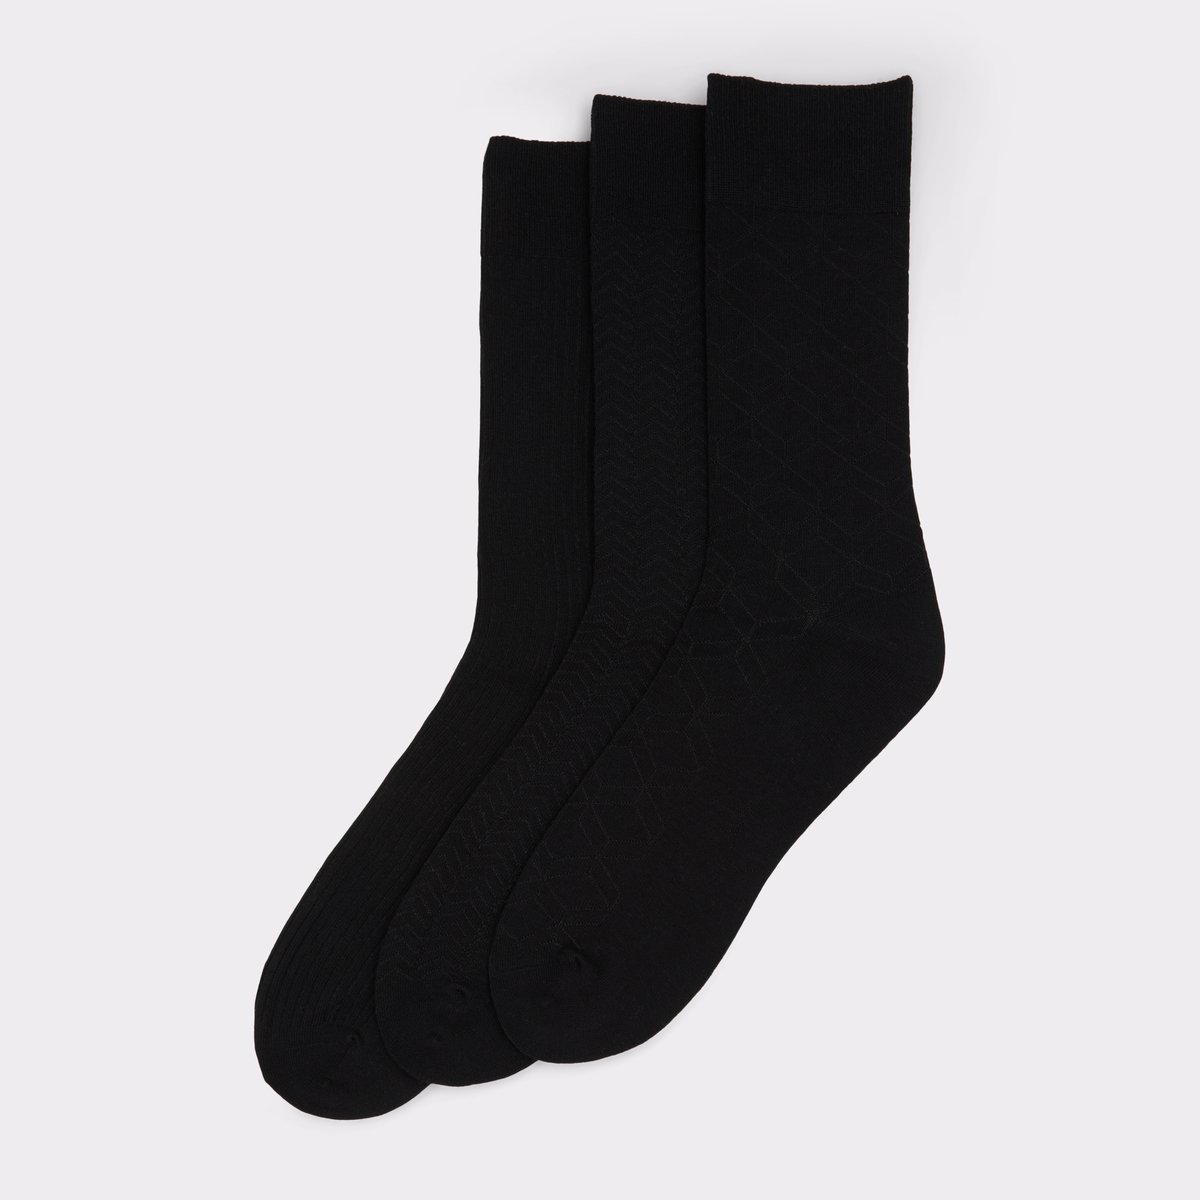 Wanaro Black Men's Socks | ALDO Canada